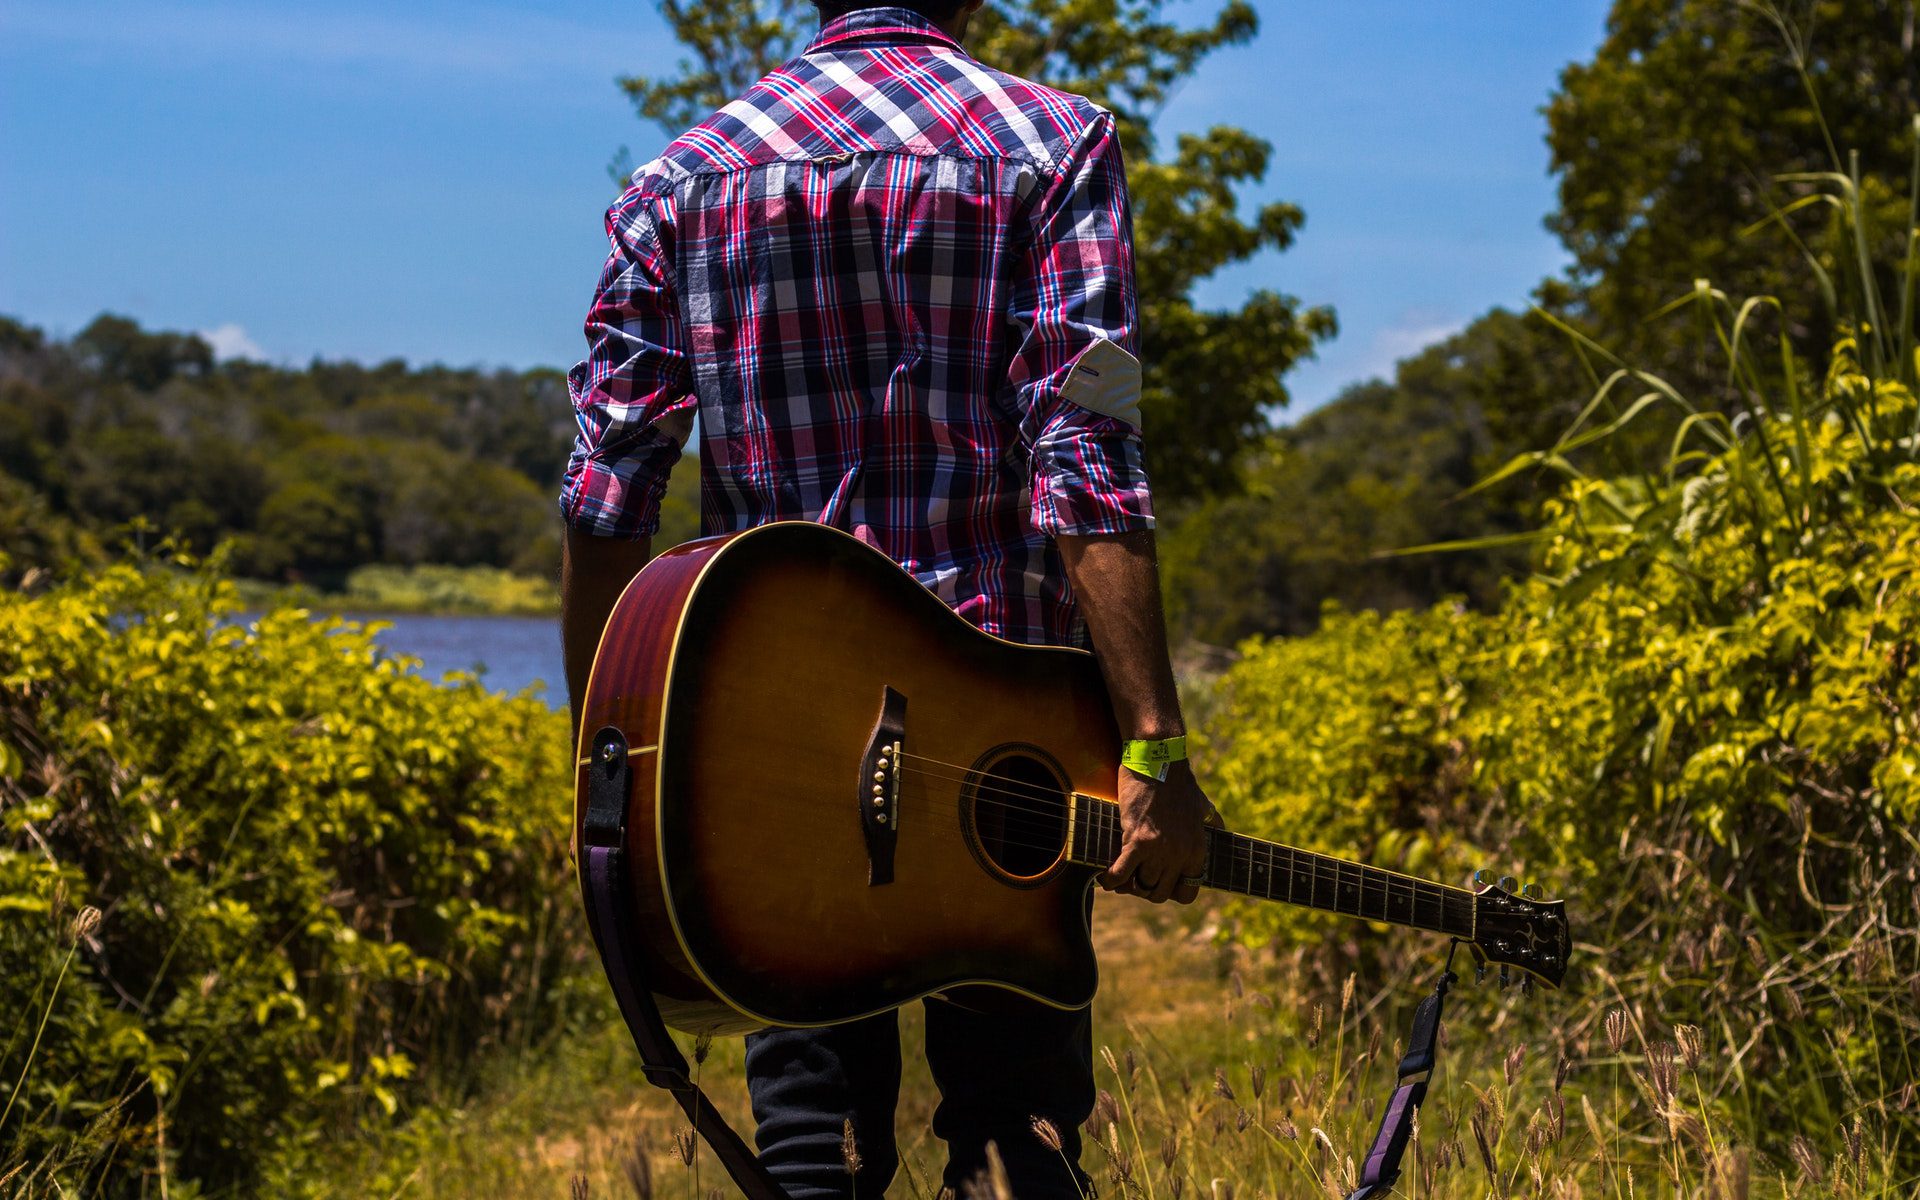 Un homme et sa guitare en campagne